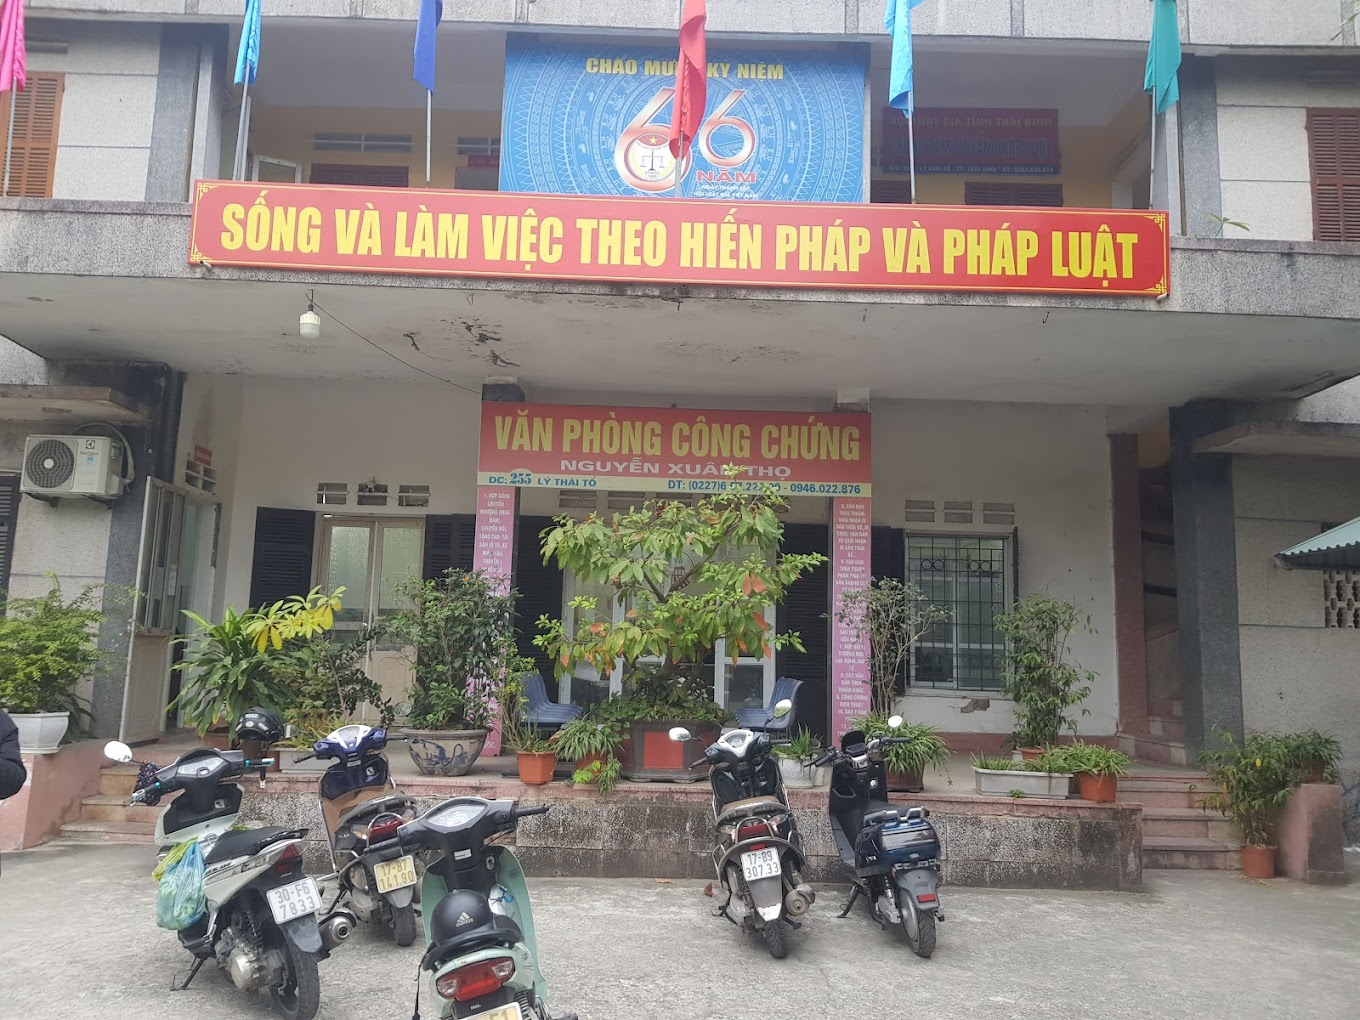 Liên hệ Văn phòng công chứng Nguyễn Xuân Thọ thông tin địa chỉ số điện thoại